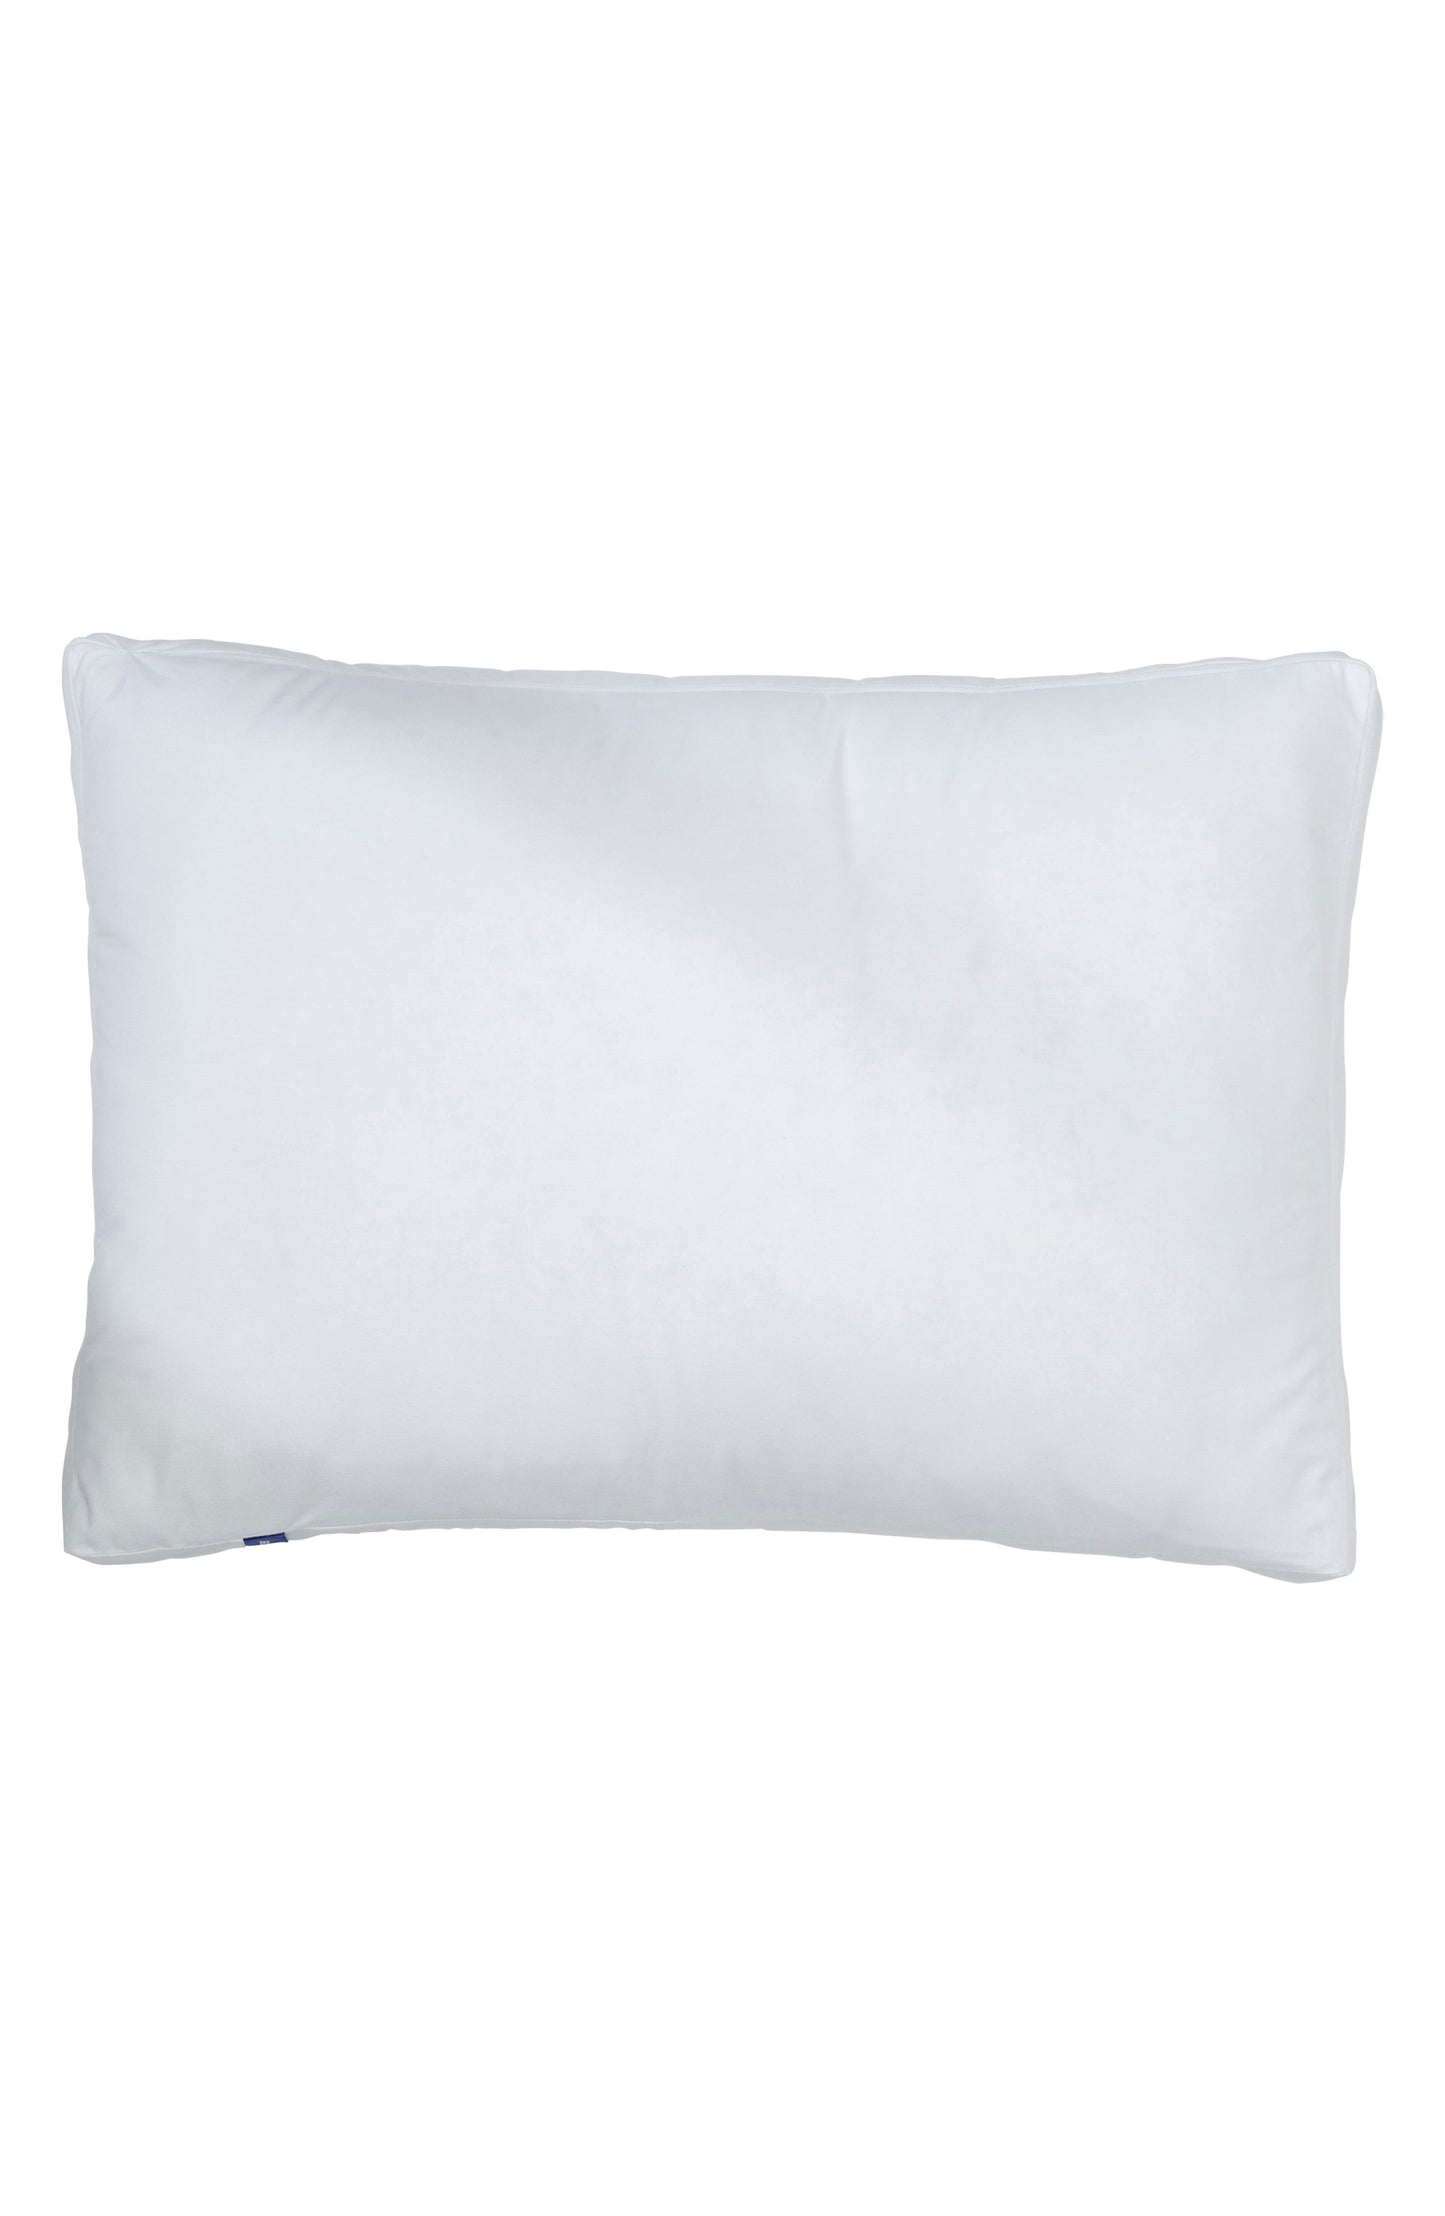 Casper Pillow for Sleeping - King - White